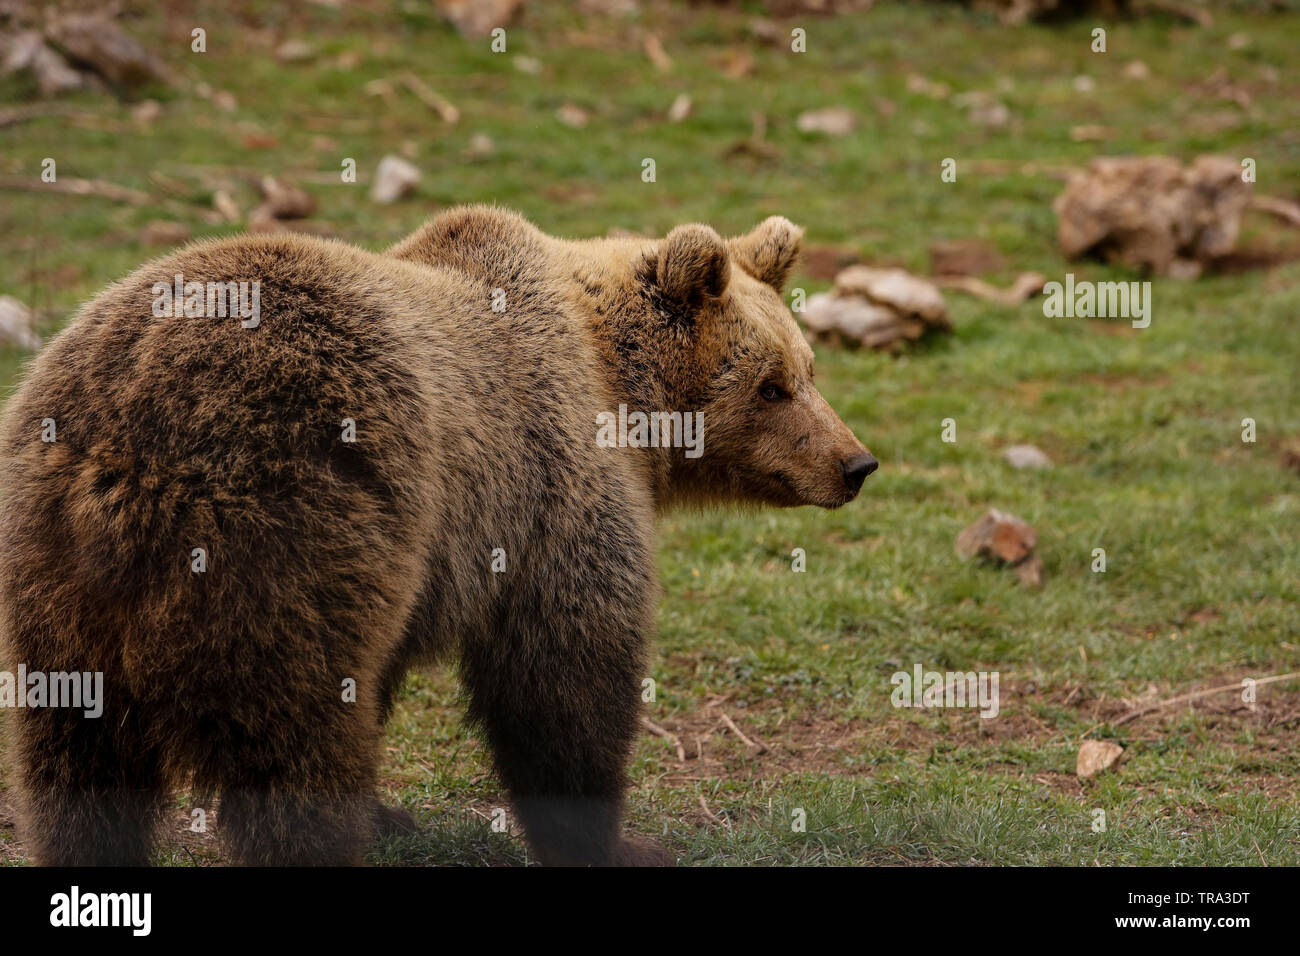 Orso europeo (Ursus arctos) mangiare cibo, nel villaggio di Kutarevo, vicino Gospic, Croazia. Sab. aprile, 4, 2015 Foto Stock